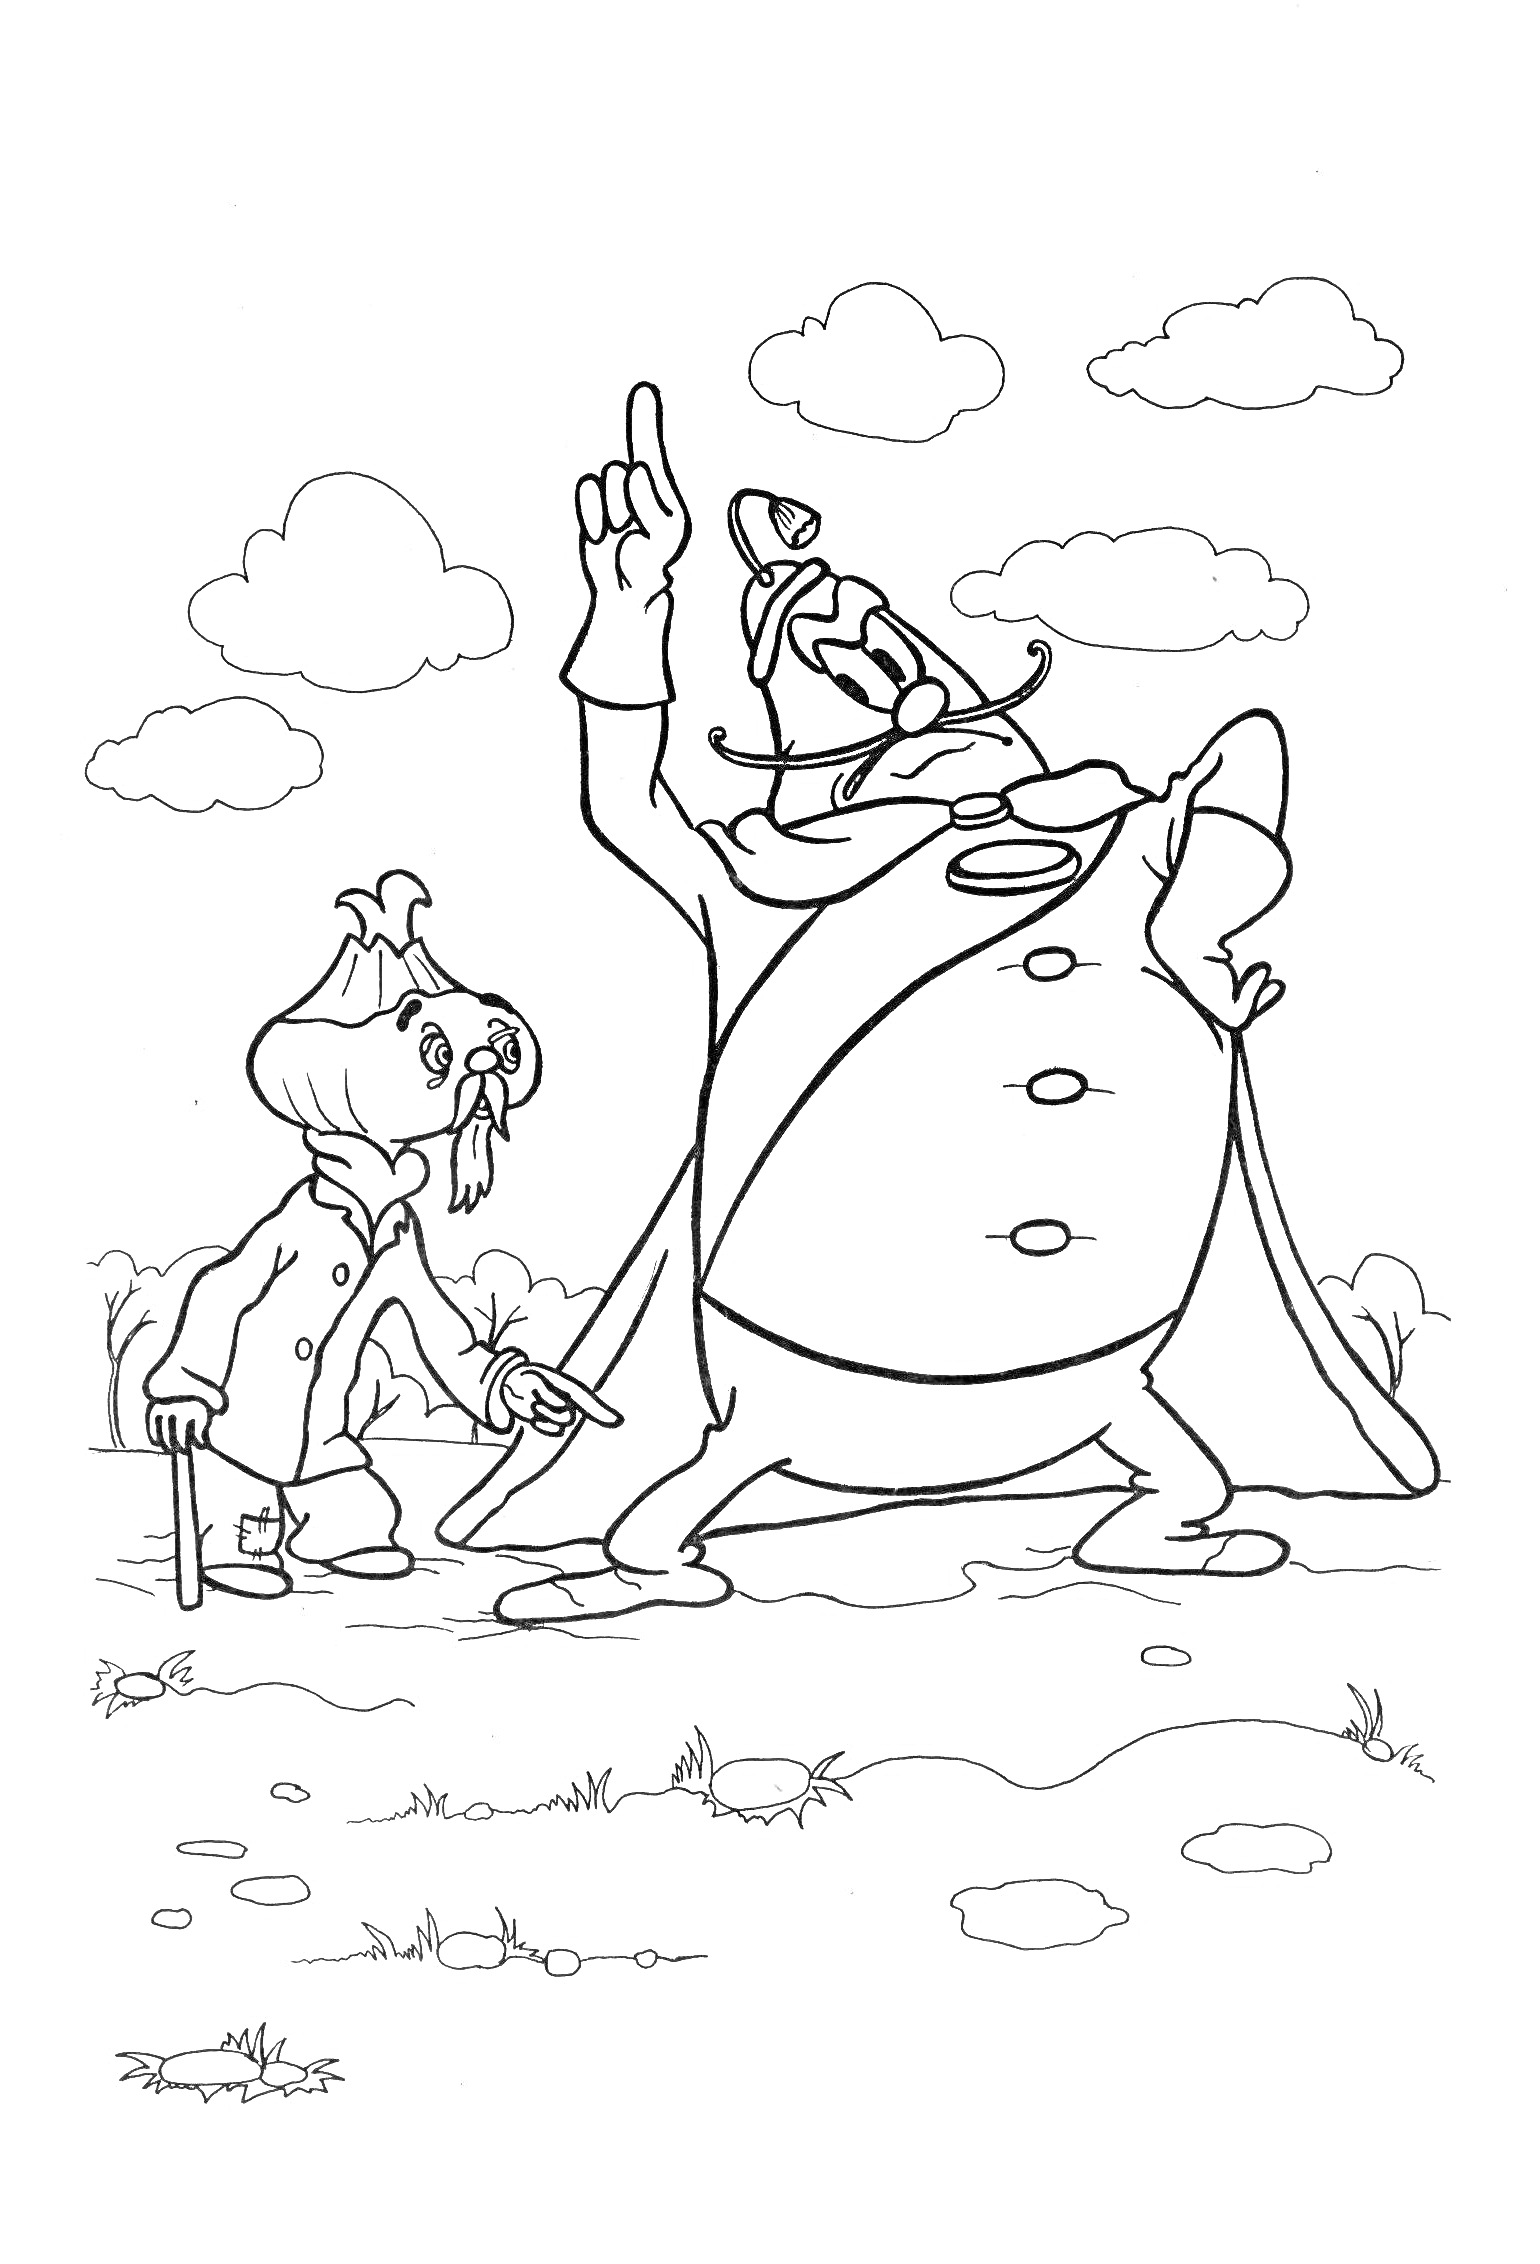 Раскраска Чиполлино и синьор Помидор на улице с облаками